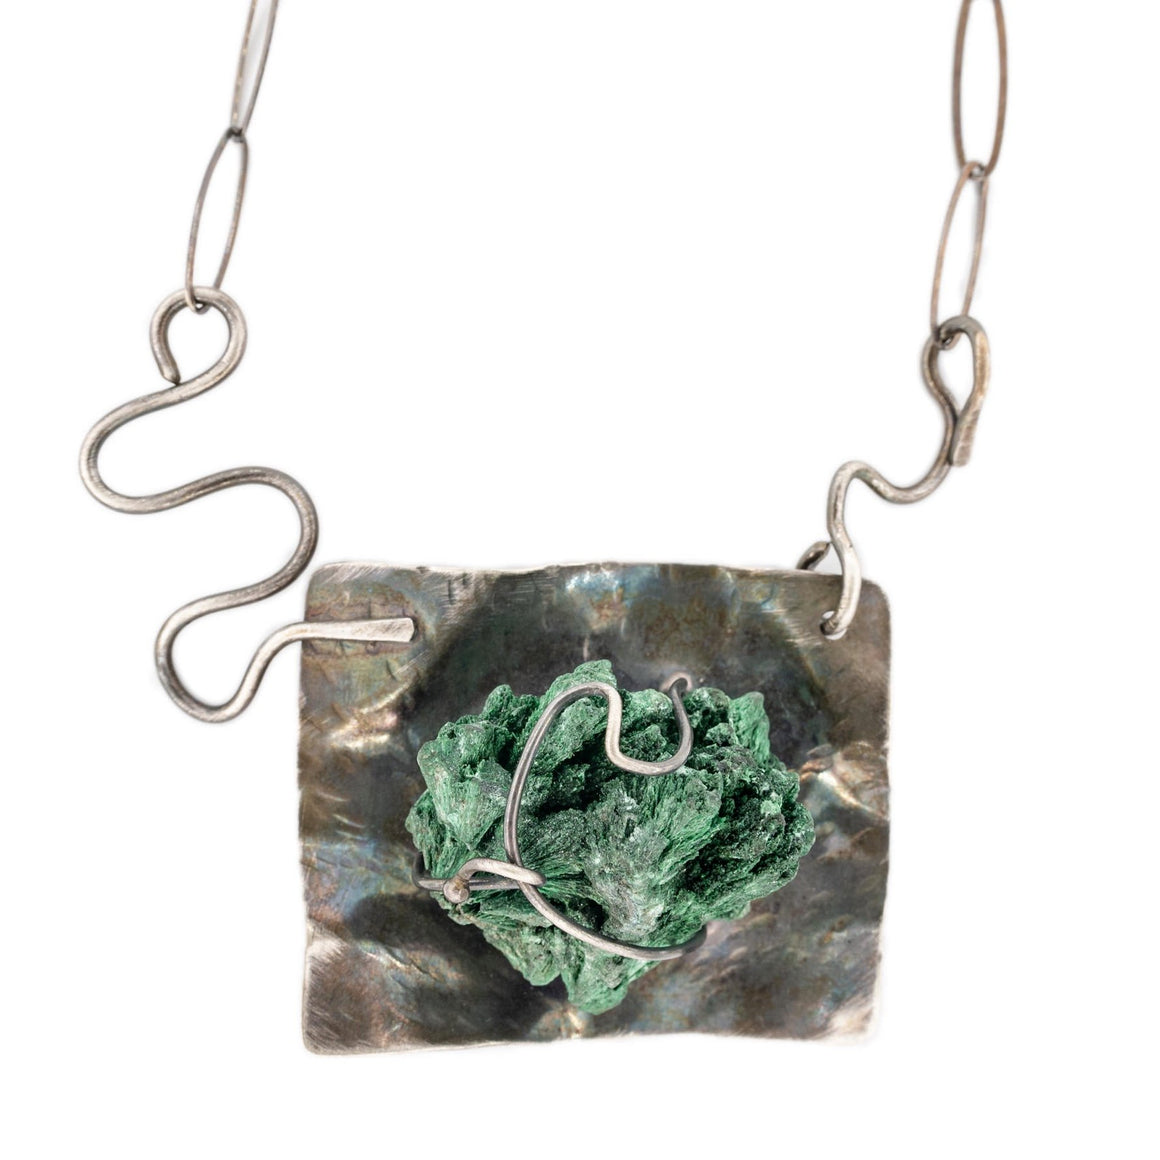 Malachite Specimen Necklace in Oxidized Silver by Original Sin Jewelry